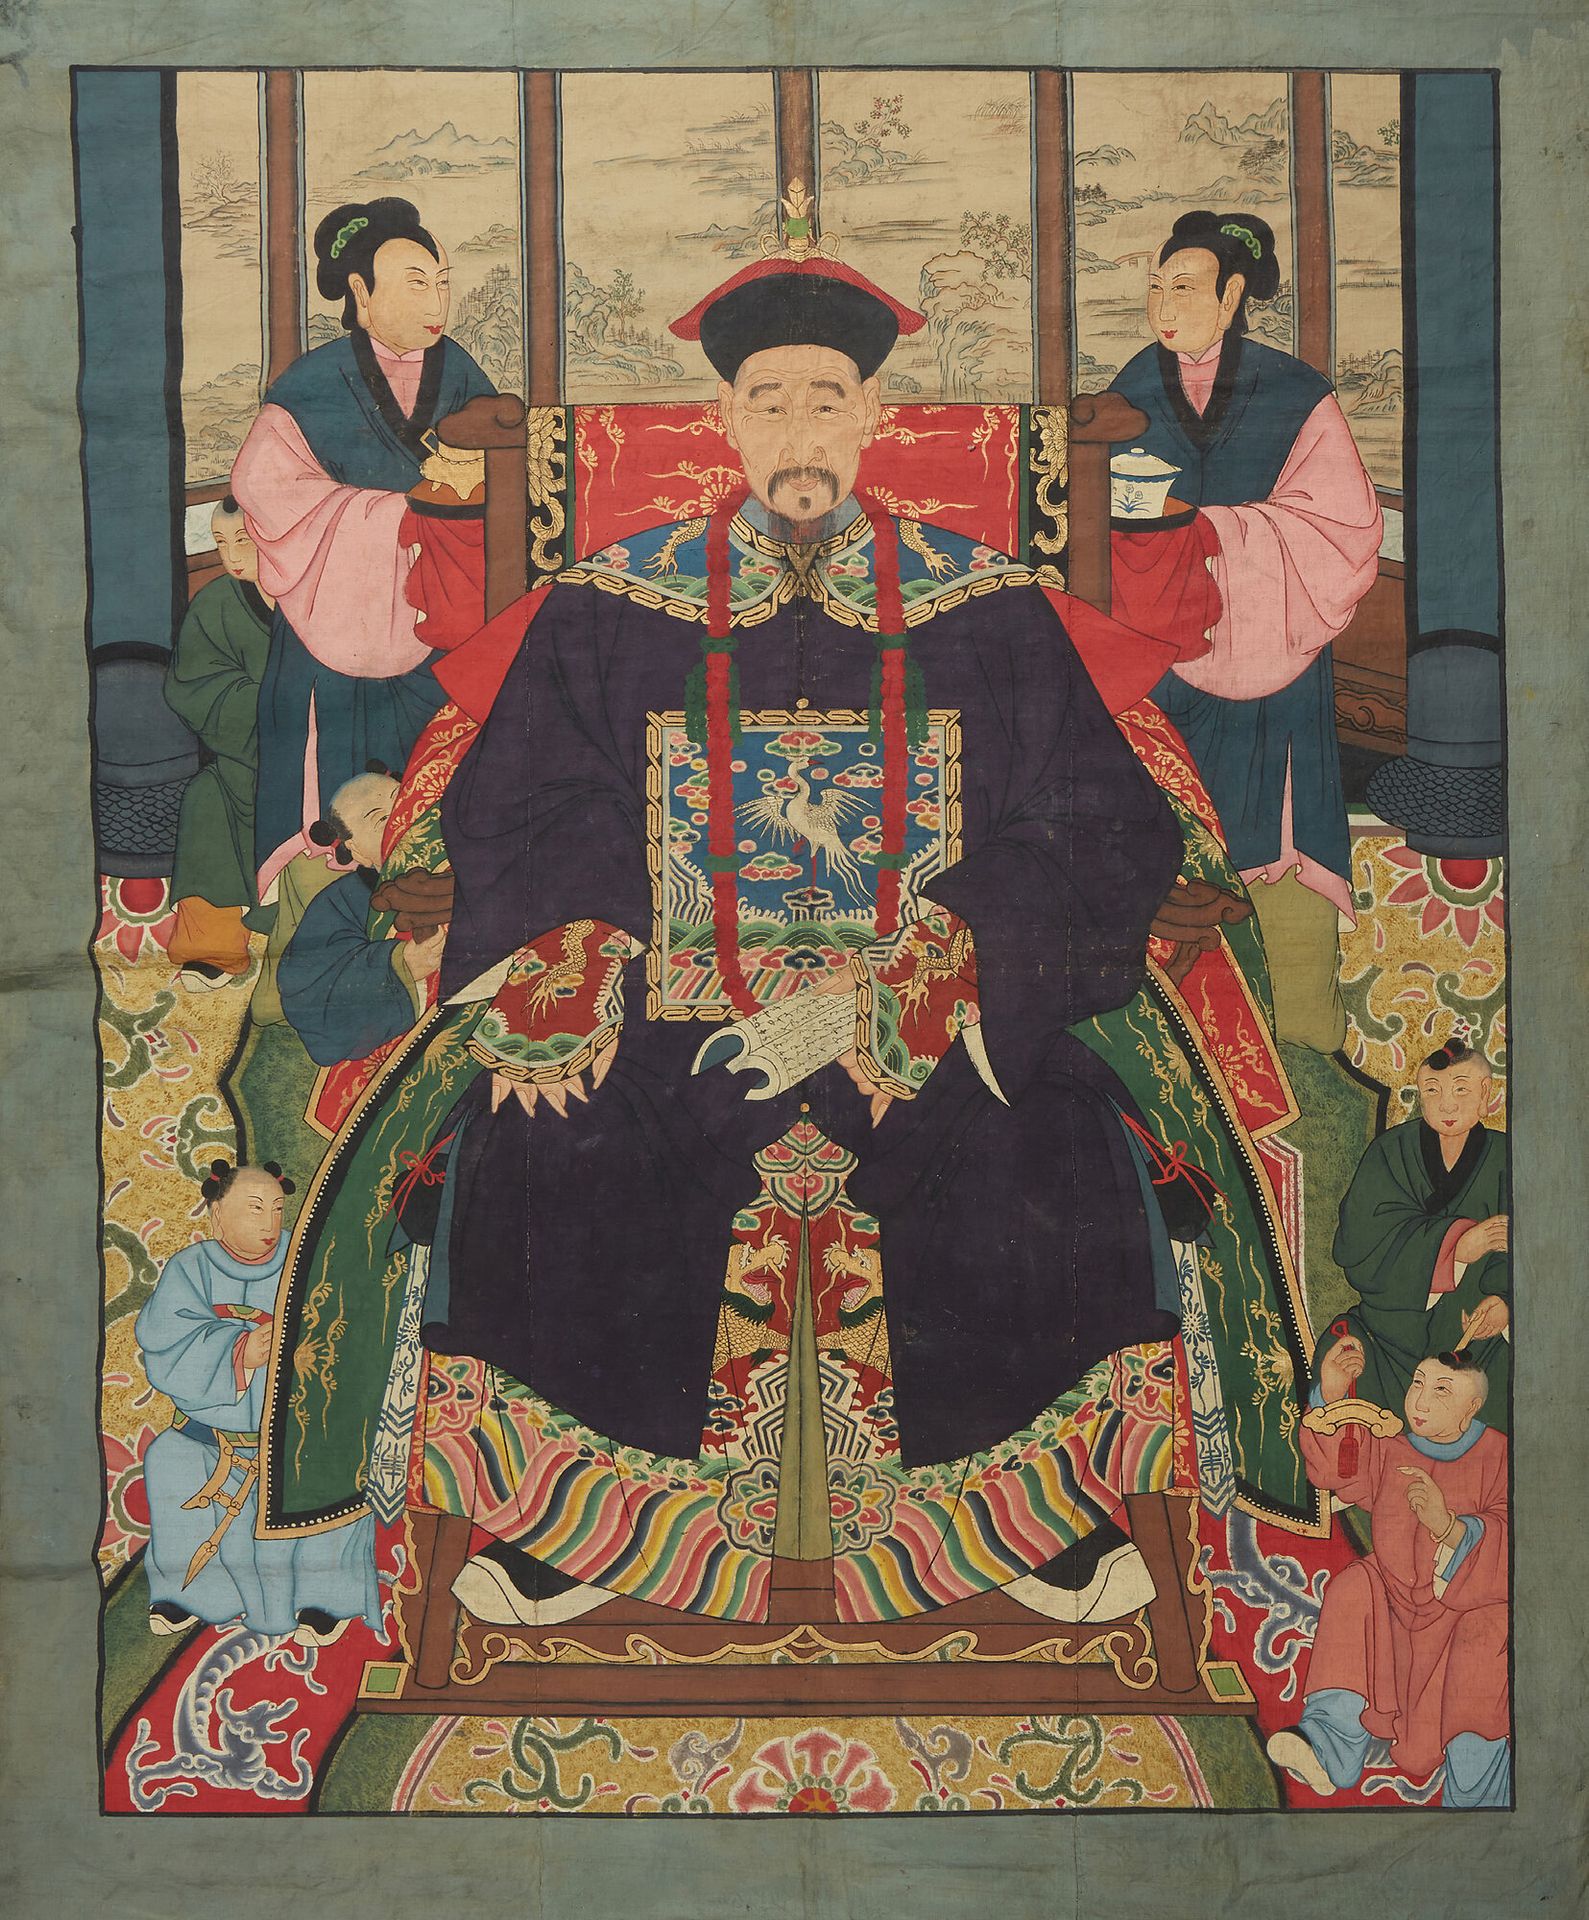 CHINE Grande peinture sur toile représentant un dignitaire.
Dim. : 205 x 155 cm